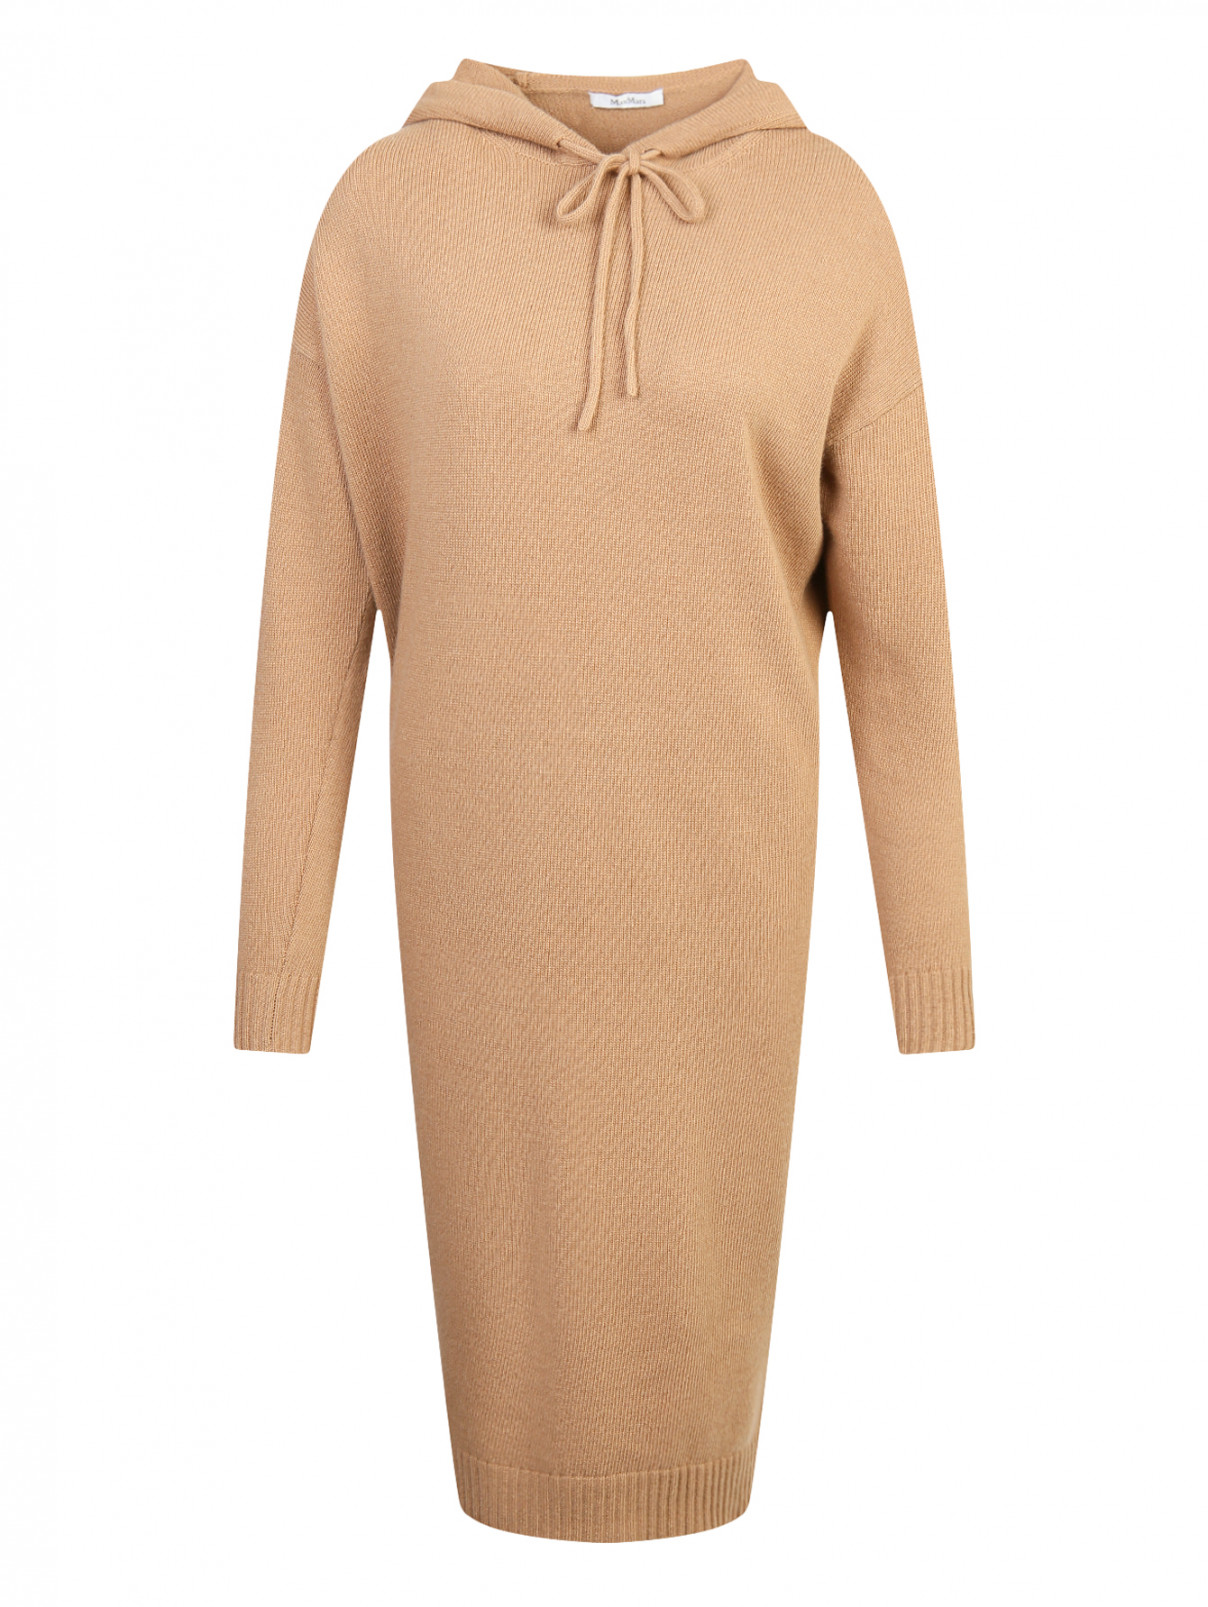 Платье трикотажное из шерсти с капюшоном Max Mara  –  Общий вид  – Цвет:  Бежевый